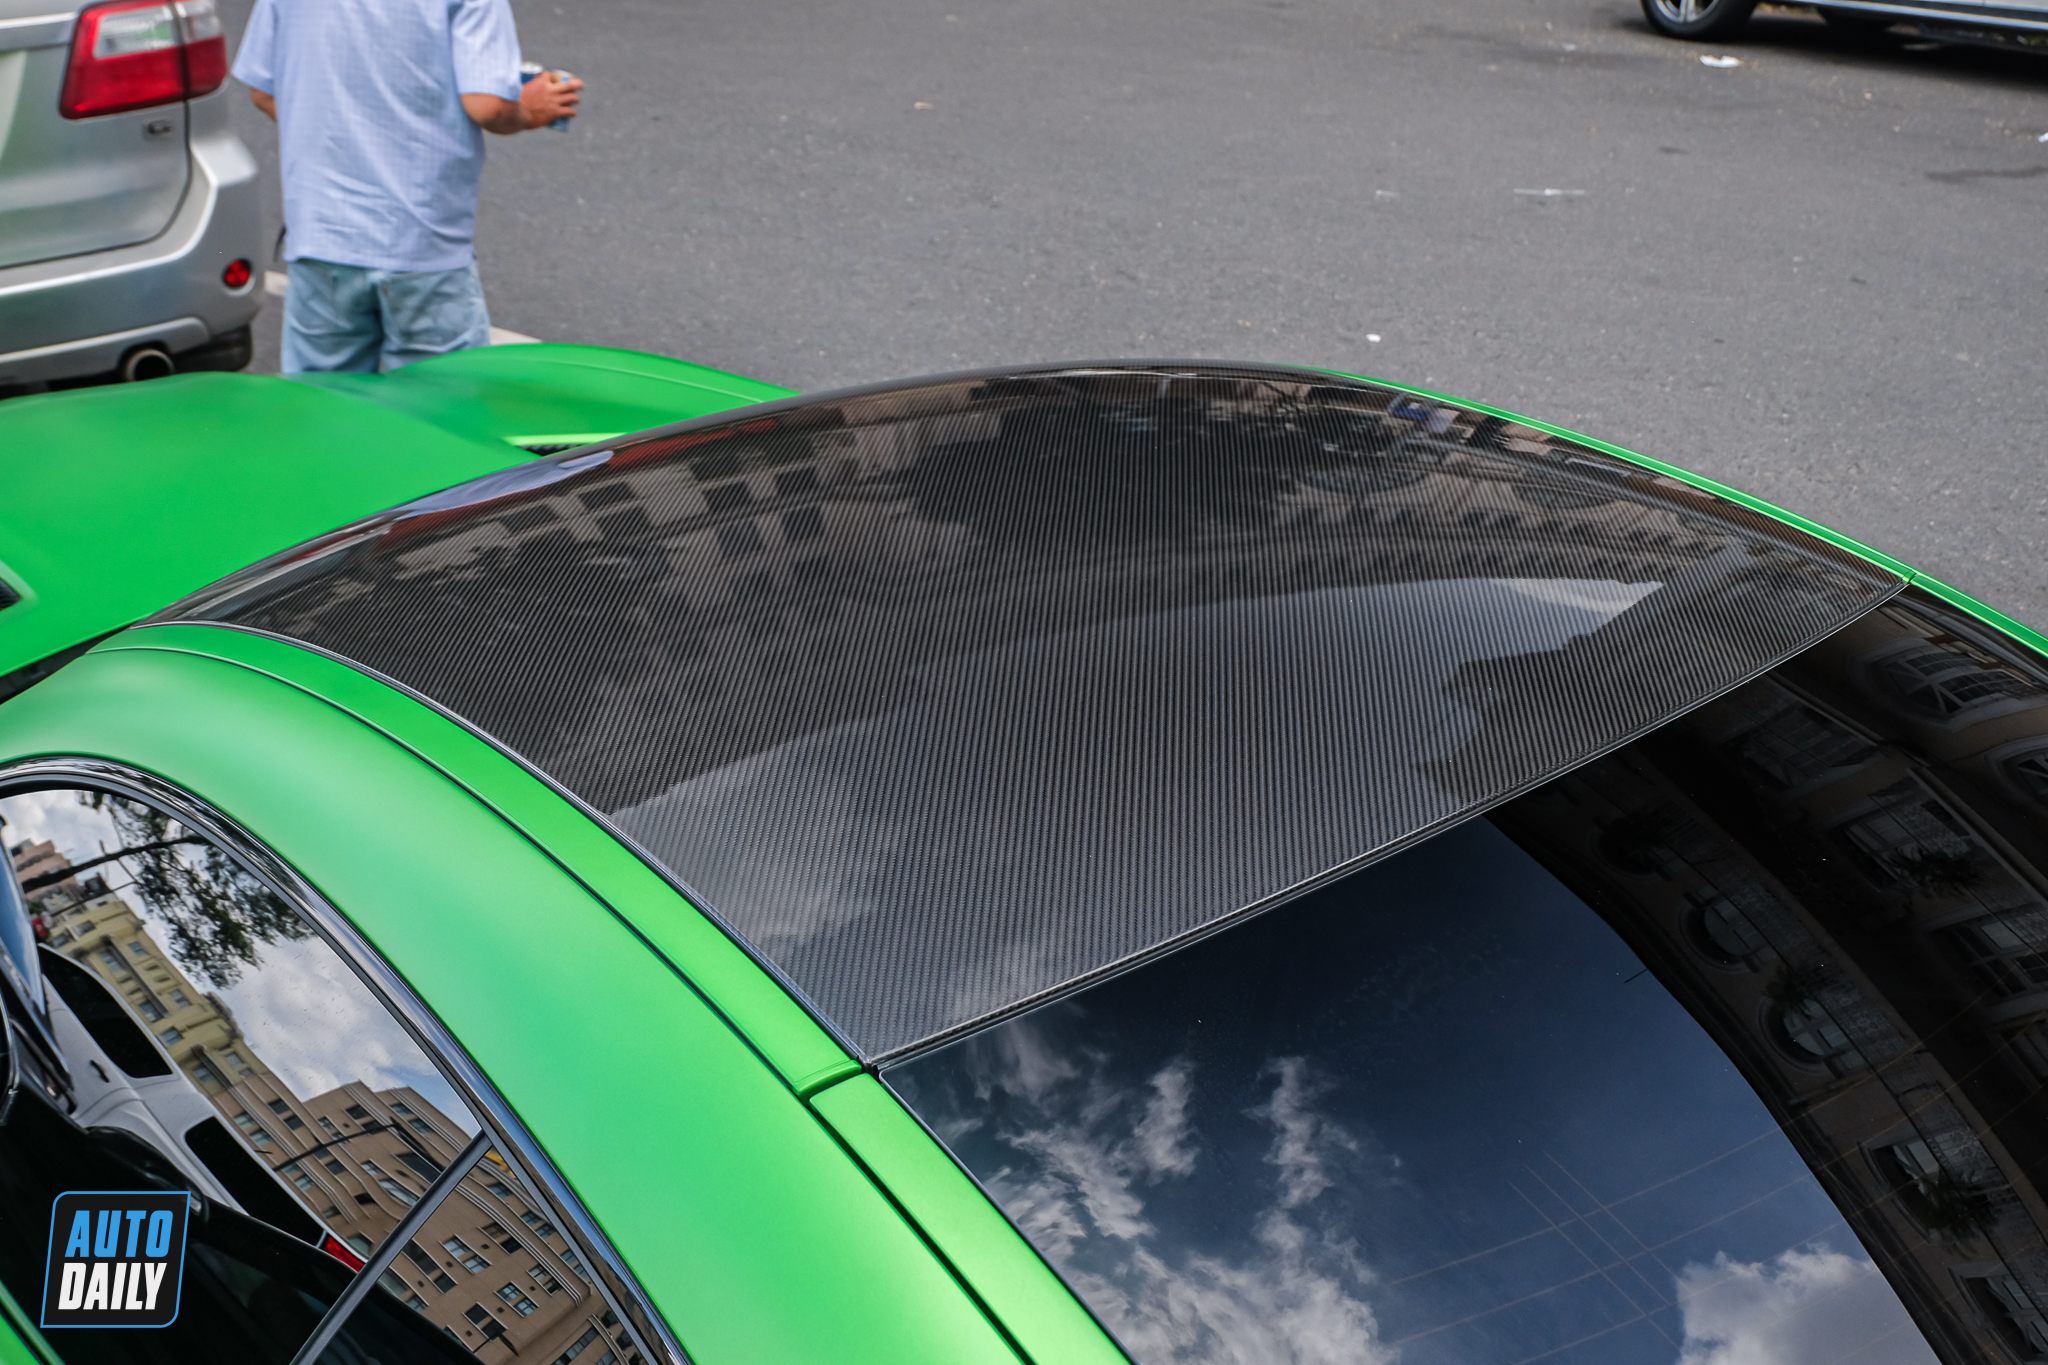 Bắt gặp Mercedes-AMG GT R giá hơn 16 tỷ, màu sơn dễ nhầm chiếc của Qua Vũ mercedes-amg-gtr-autodaily-7.JPG